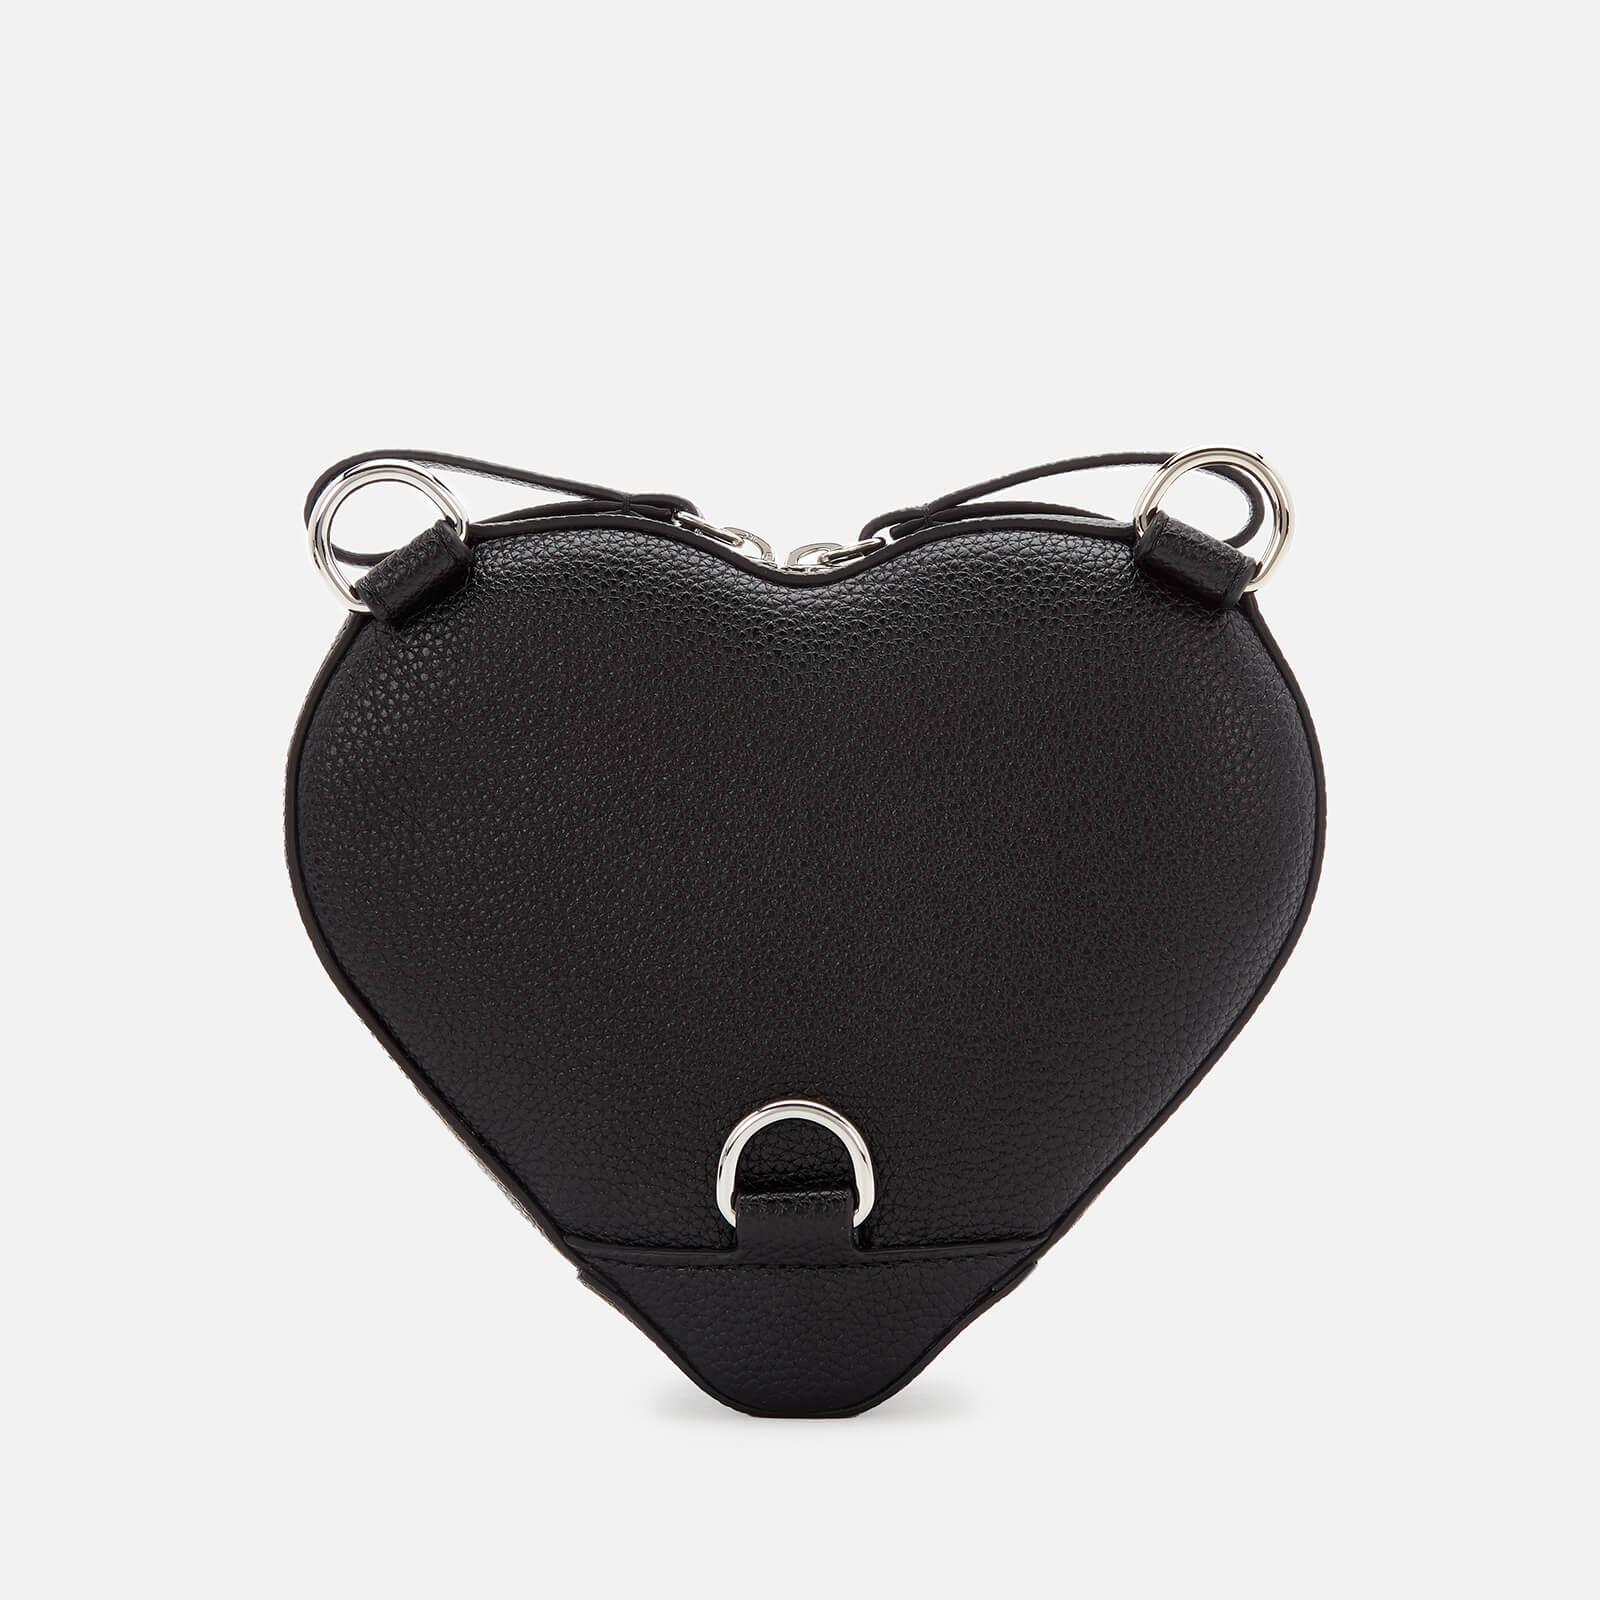 Vivienne Westwood 'Johanna' heart-shaped shoulder bag